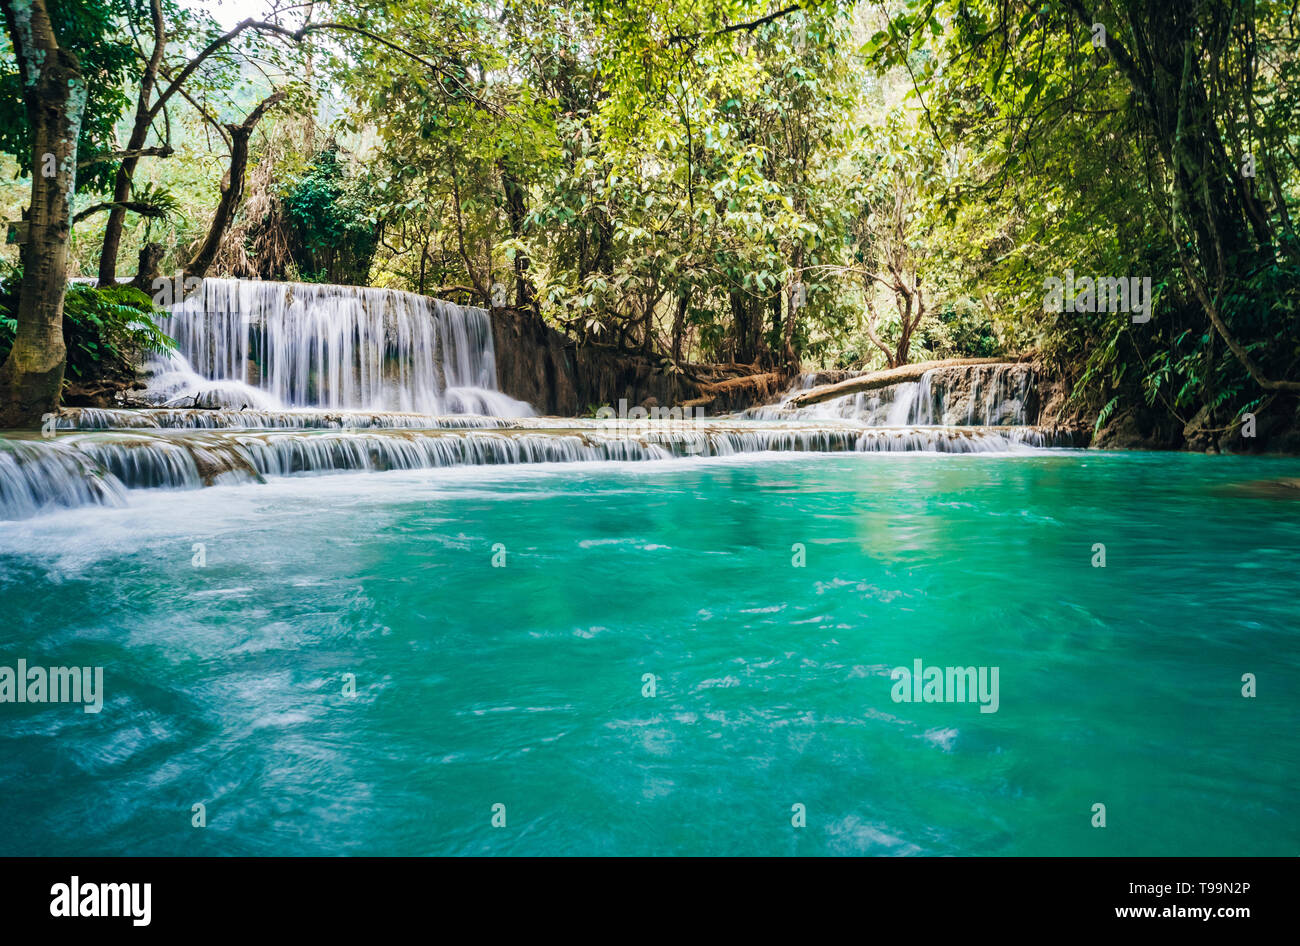 La cascada y pequeño estanque fresco con agua de color turquesa. Concepto de turismo ecológico. Fantásticamente hermosa naturaleza con agua clara y salvajes bosques Foto de stock